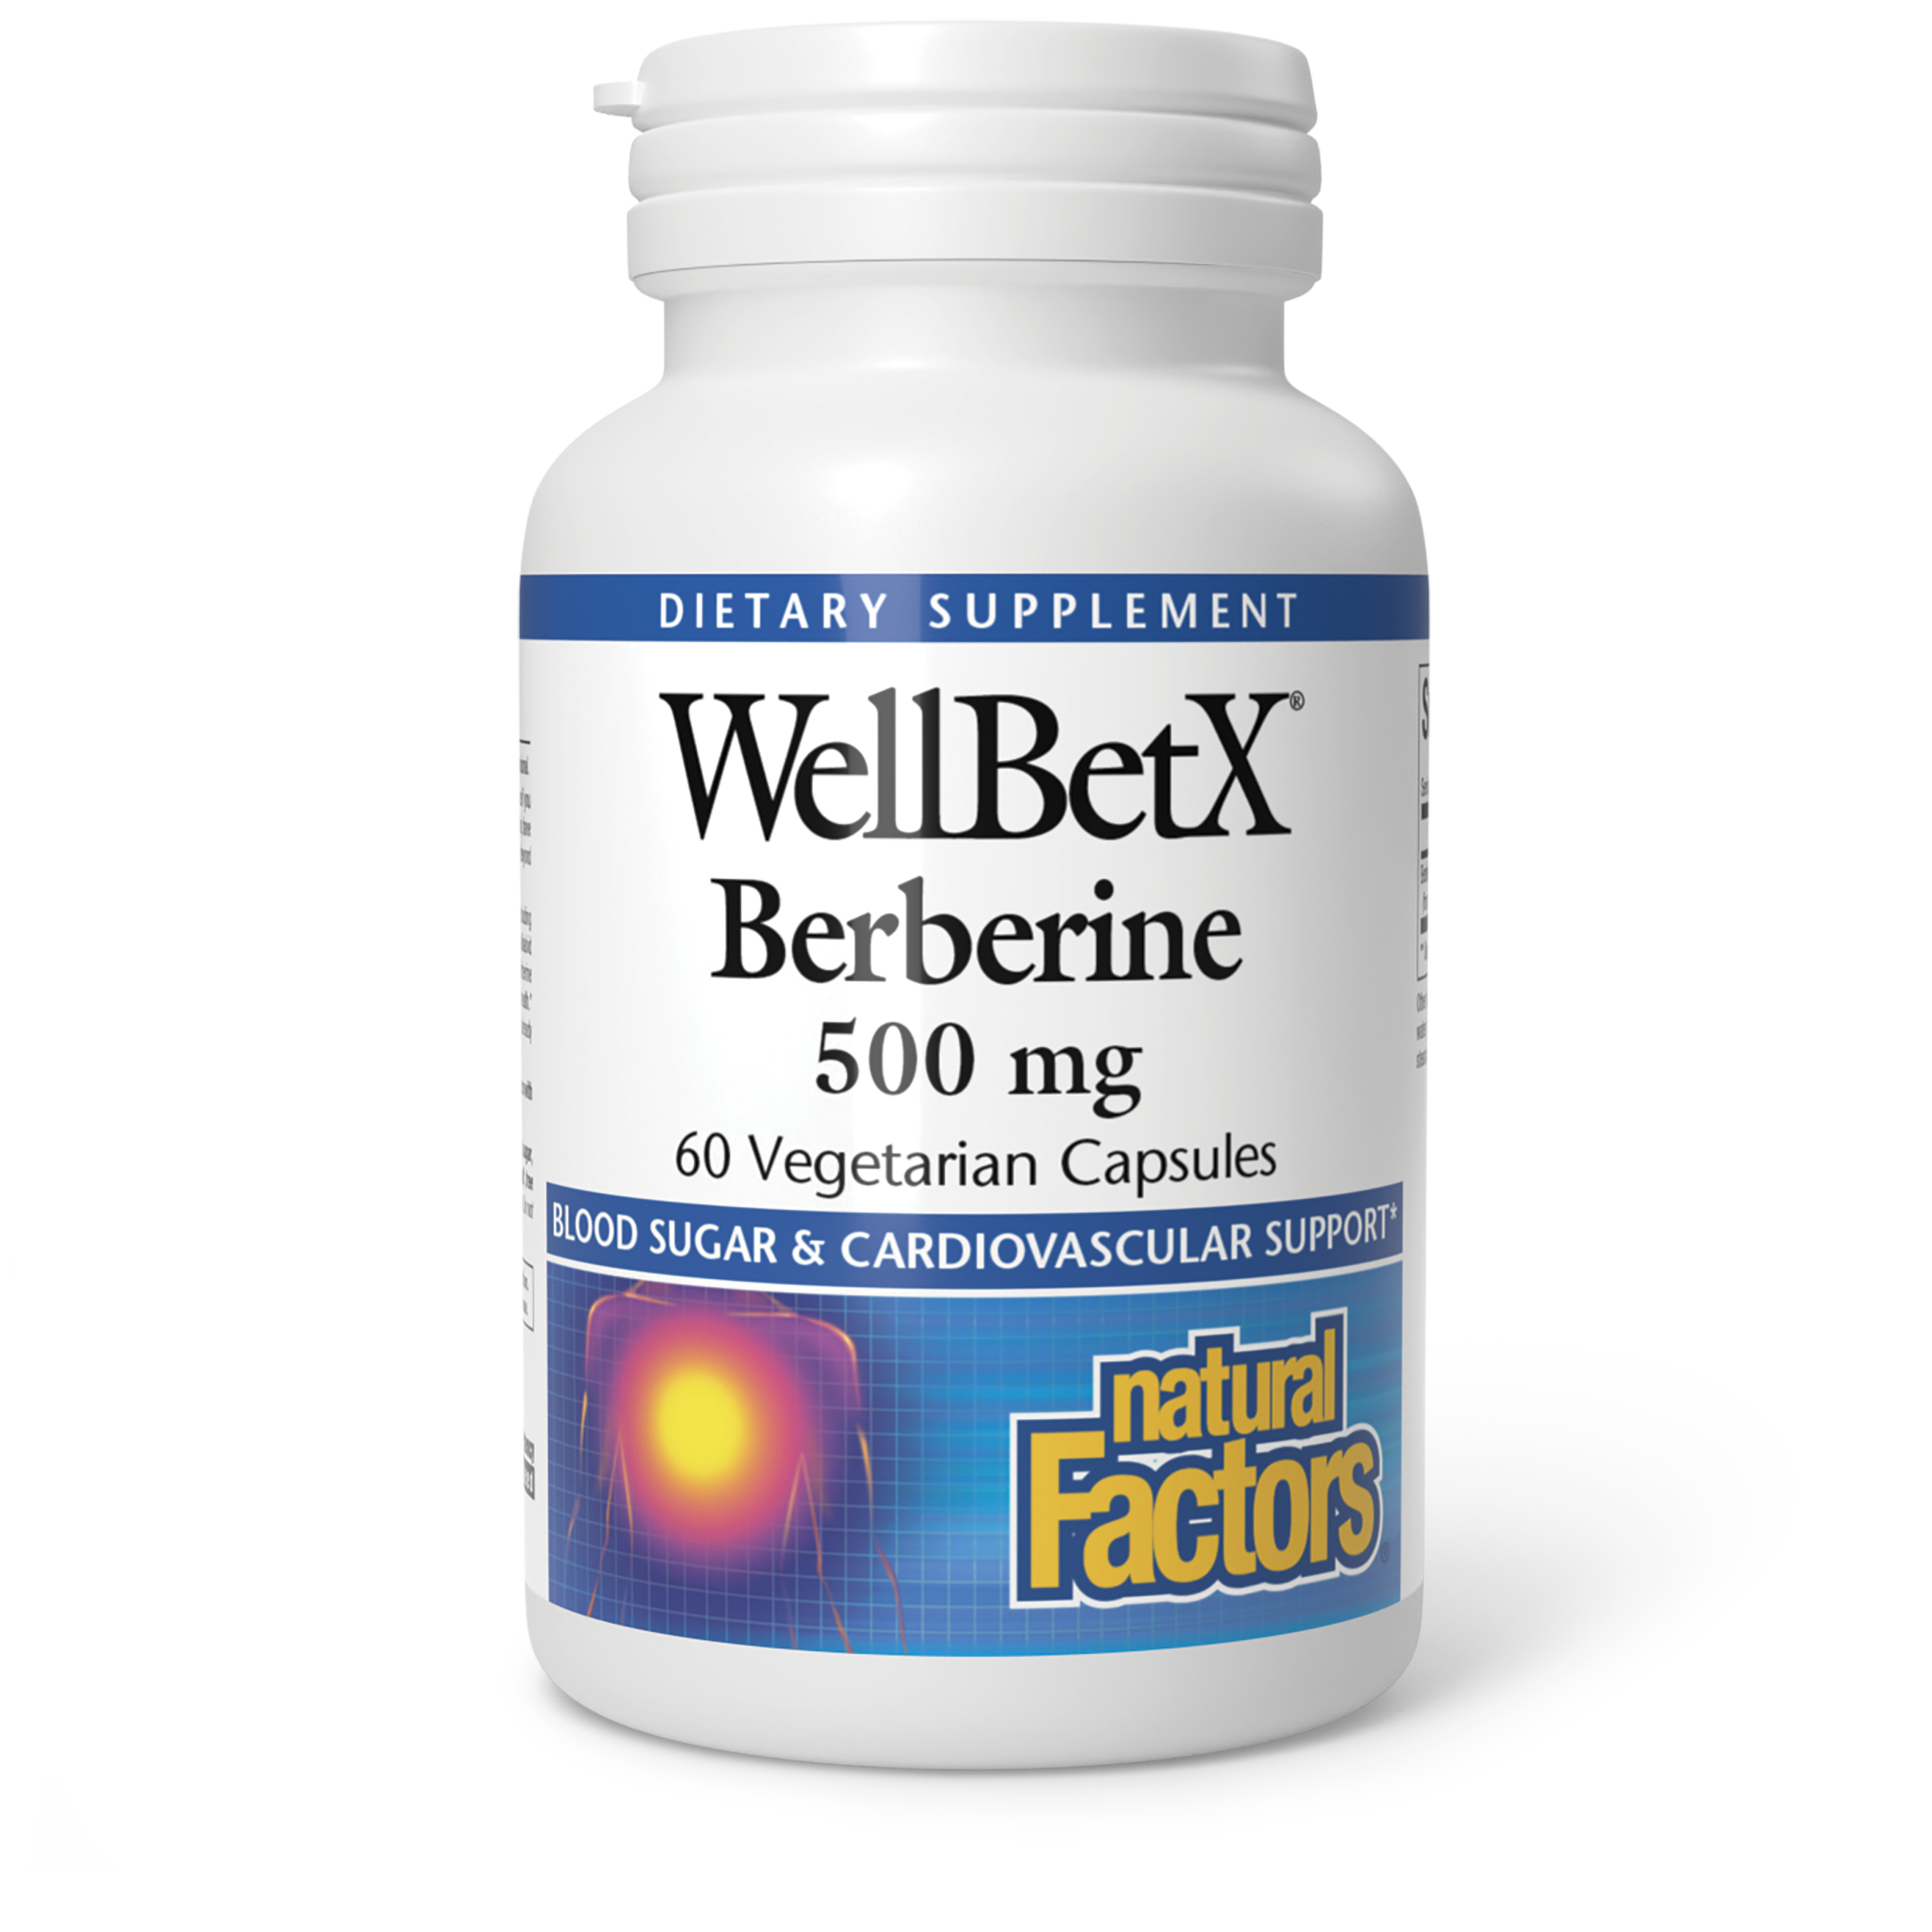 Берберин что это такое. Берберин WELLBETX. Berberine WELLBETX natural Factors, 500 мг. Natural Factors, WELLBETX берберин 500 мг, 60 веганских капсул. Берберин 500 мг айхерб.